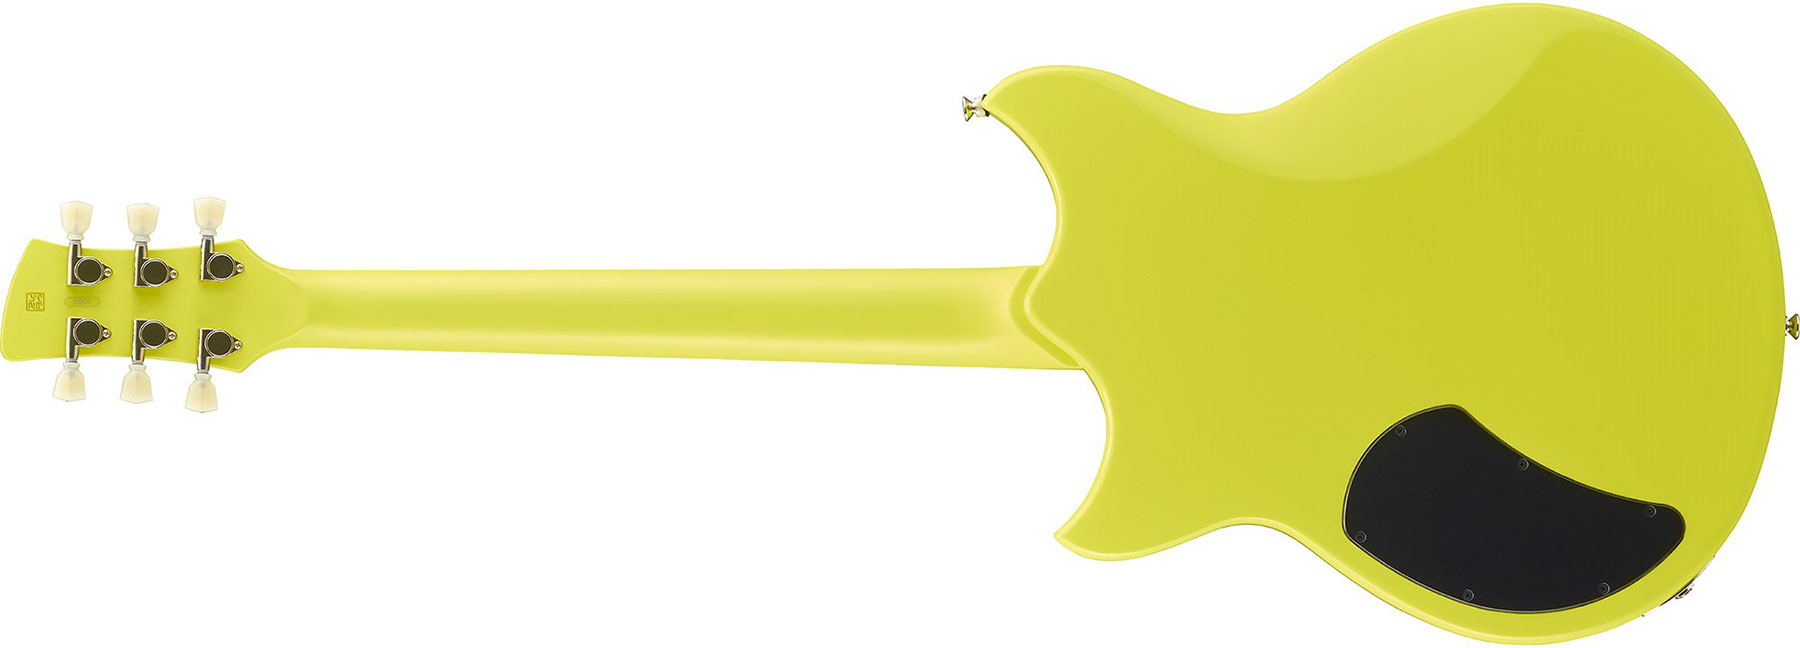 Yamaha Rse20 Revstar Element Hh Ht Rw - Neon Yellow - Guitarra eléctrica de doble corte - Variation 2